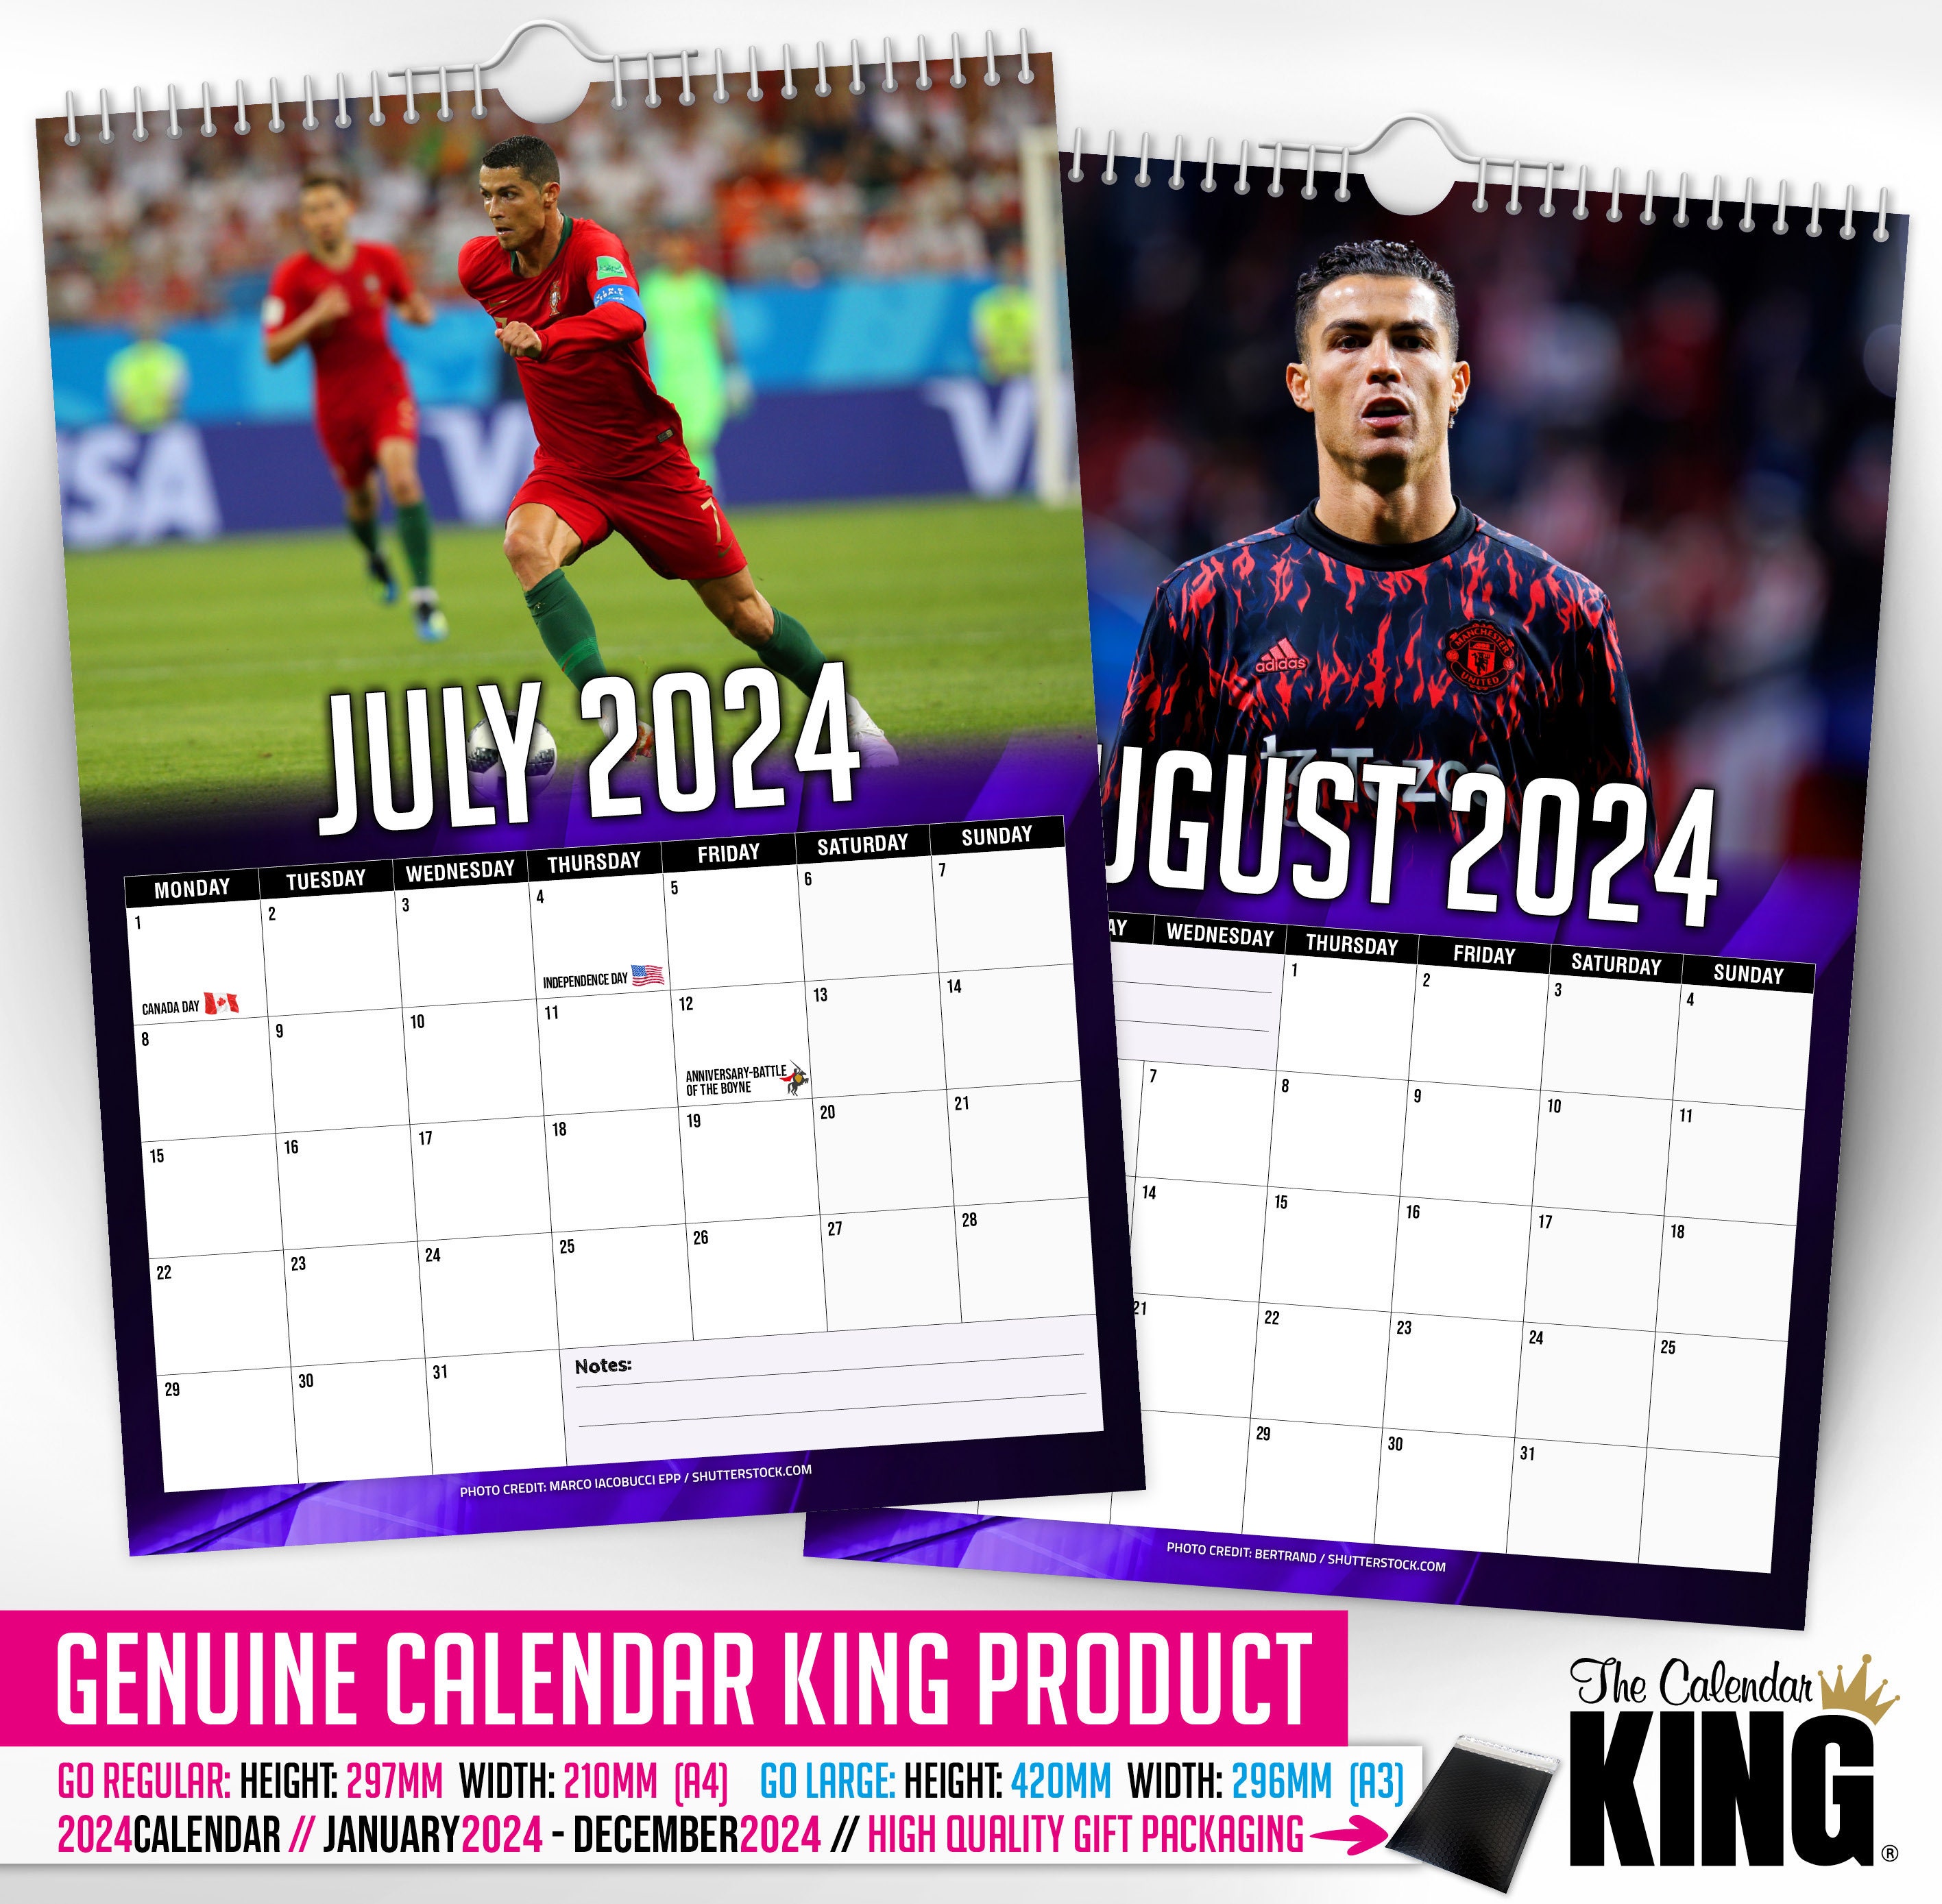 Cristiano Ronaldo - 2024 Wall Calendar, Gift Idea, Present, Novelty, Football, CR7